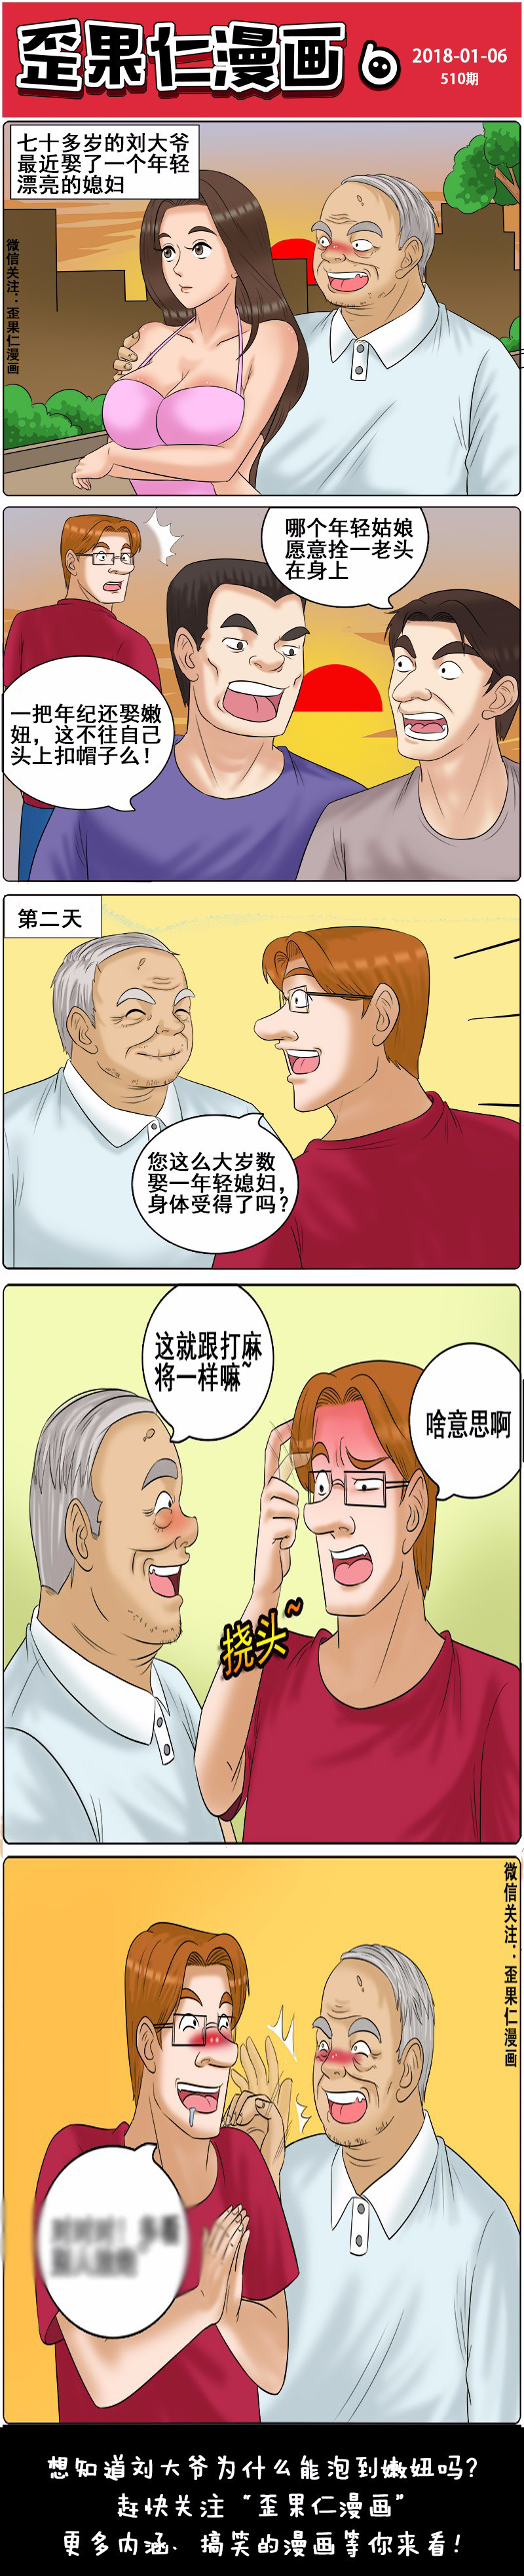 搞笑漫画:老汉"吃嫩草"娶20岁小姑娘,其中套路让人不得不服!